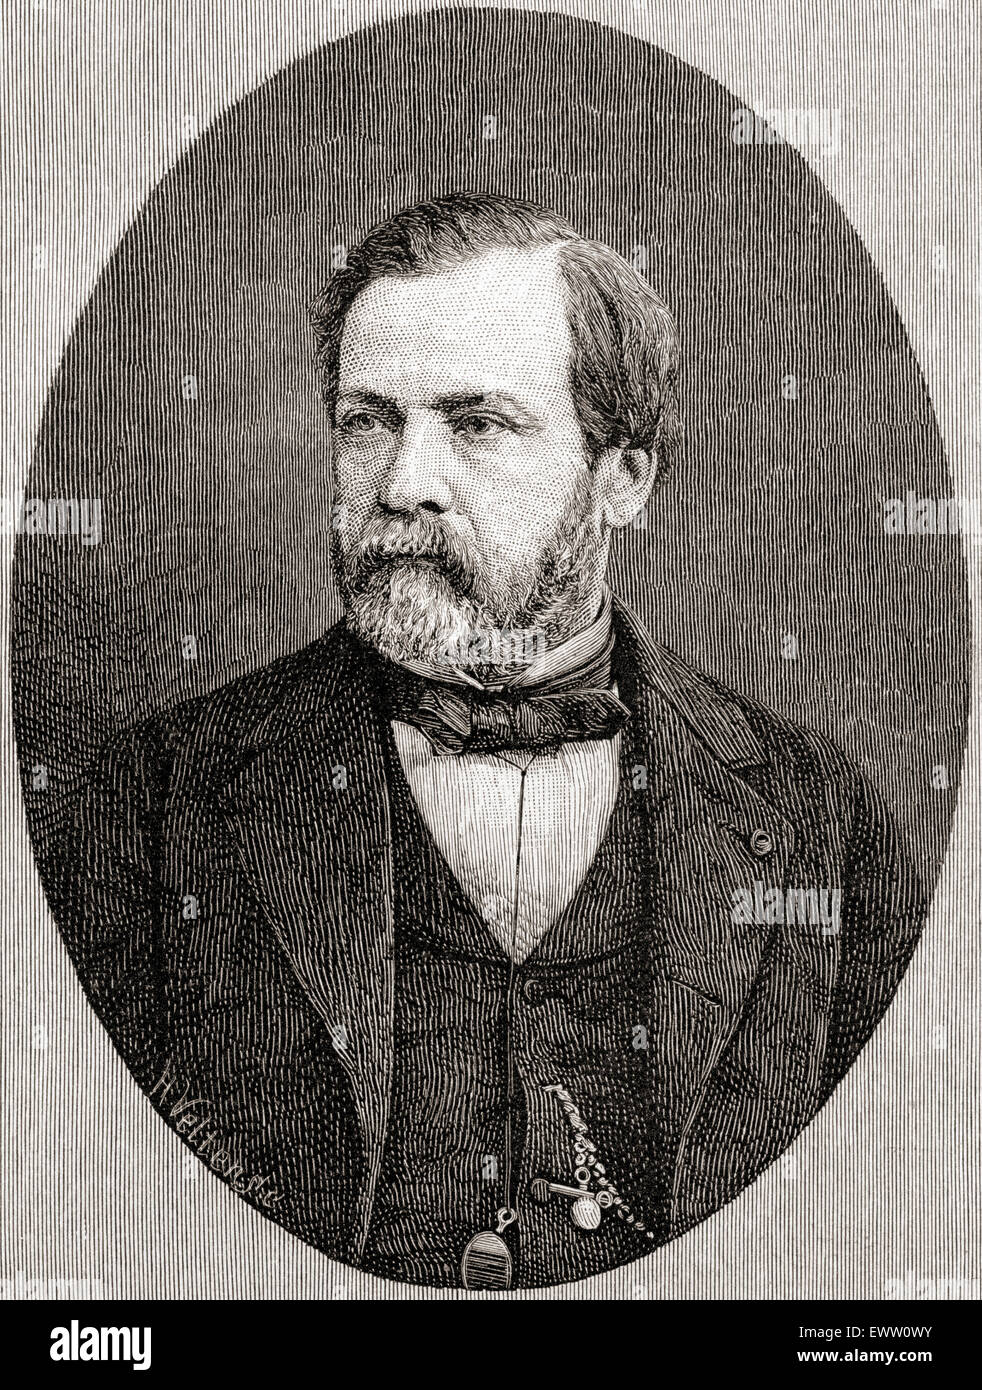 Louis Pasteur, 1822-1895.  Französischer Chemiker und Mikrobiologe bekannt für seine Entdeckungen von den Grundsätzen der Impfung, mikrobielle Fermentation und Pasteurisierung. Stockfoto